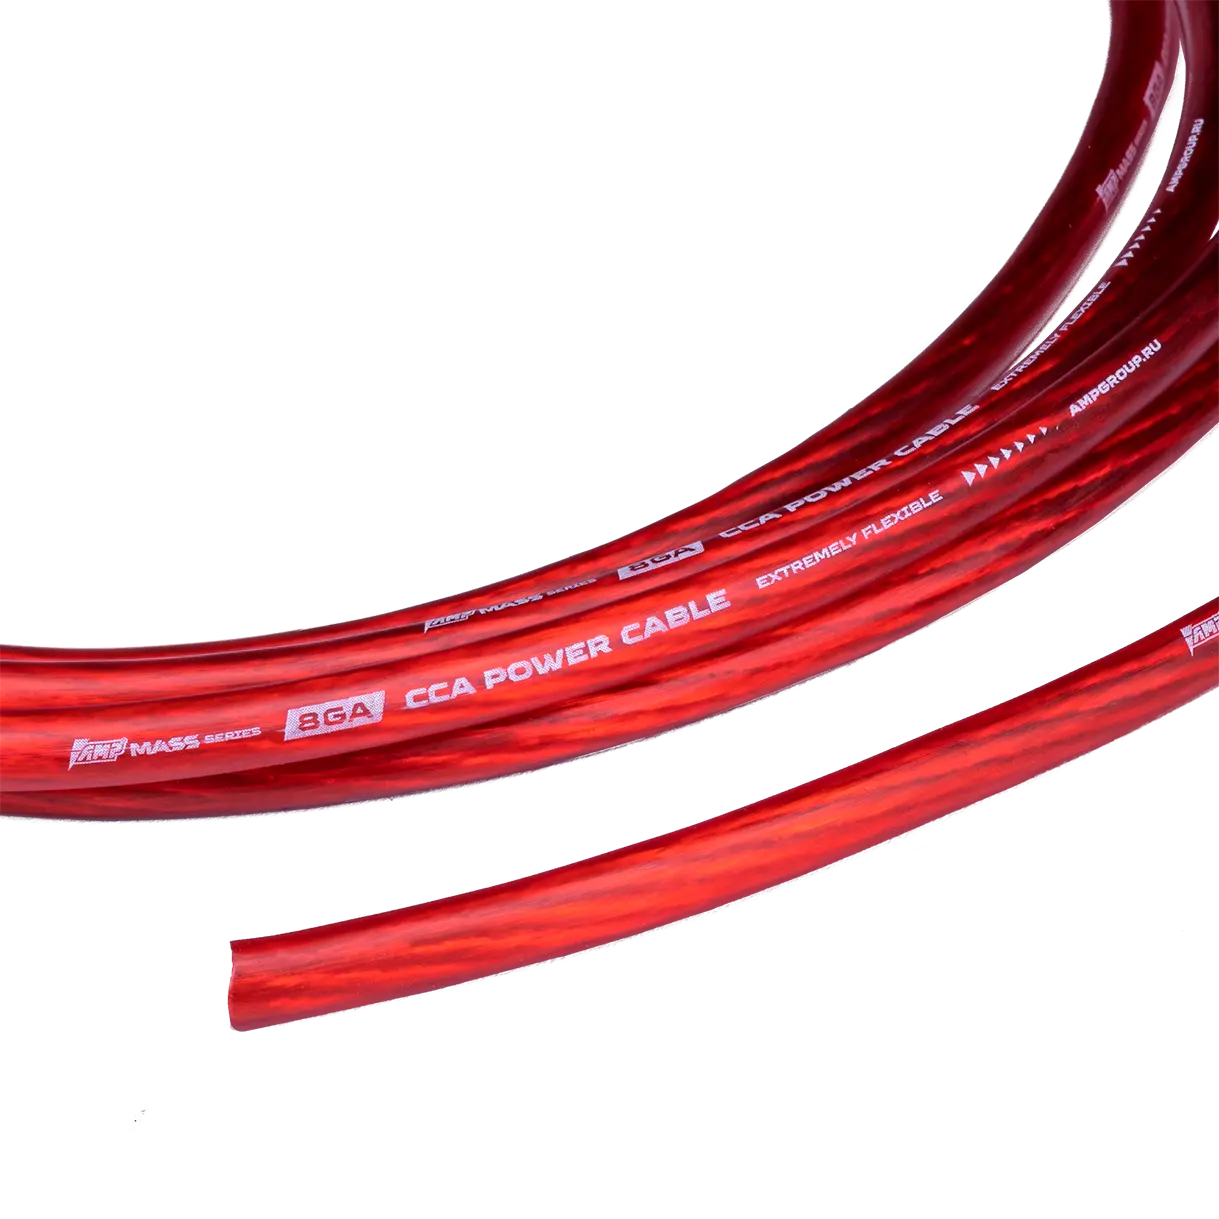 Провод силовой AMP MASS 8Ga CCA Extremely flexible Красный алюминий купить в интернет магазине AMPGROUP.  Провод силовой AMP MASS 8Ga CCA Extremely flexible Красный алюминий   цены, большой каталог, новинки.
